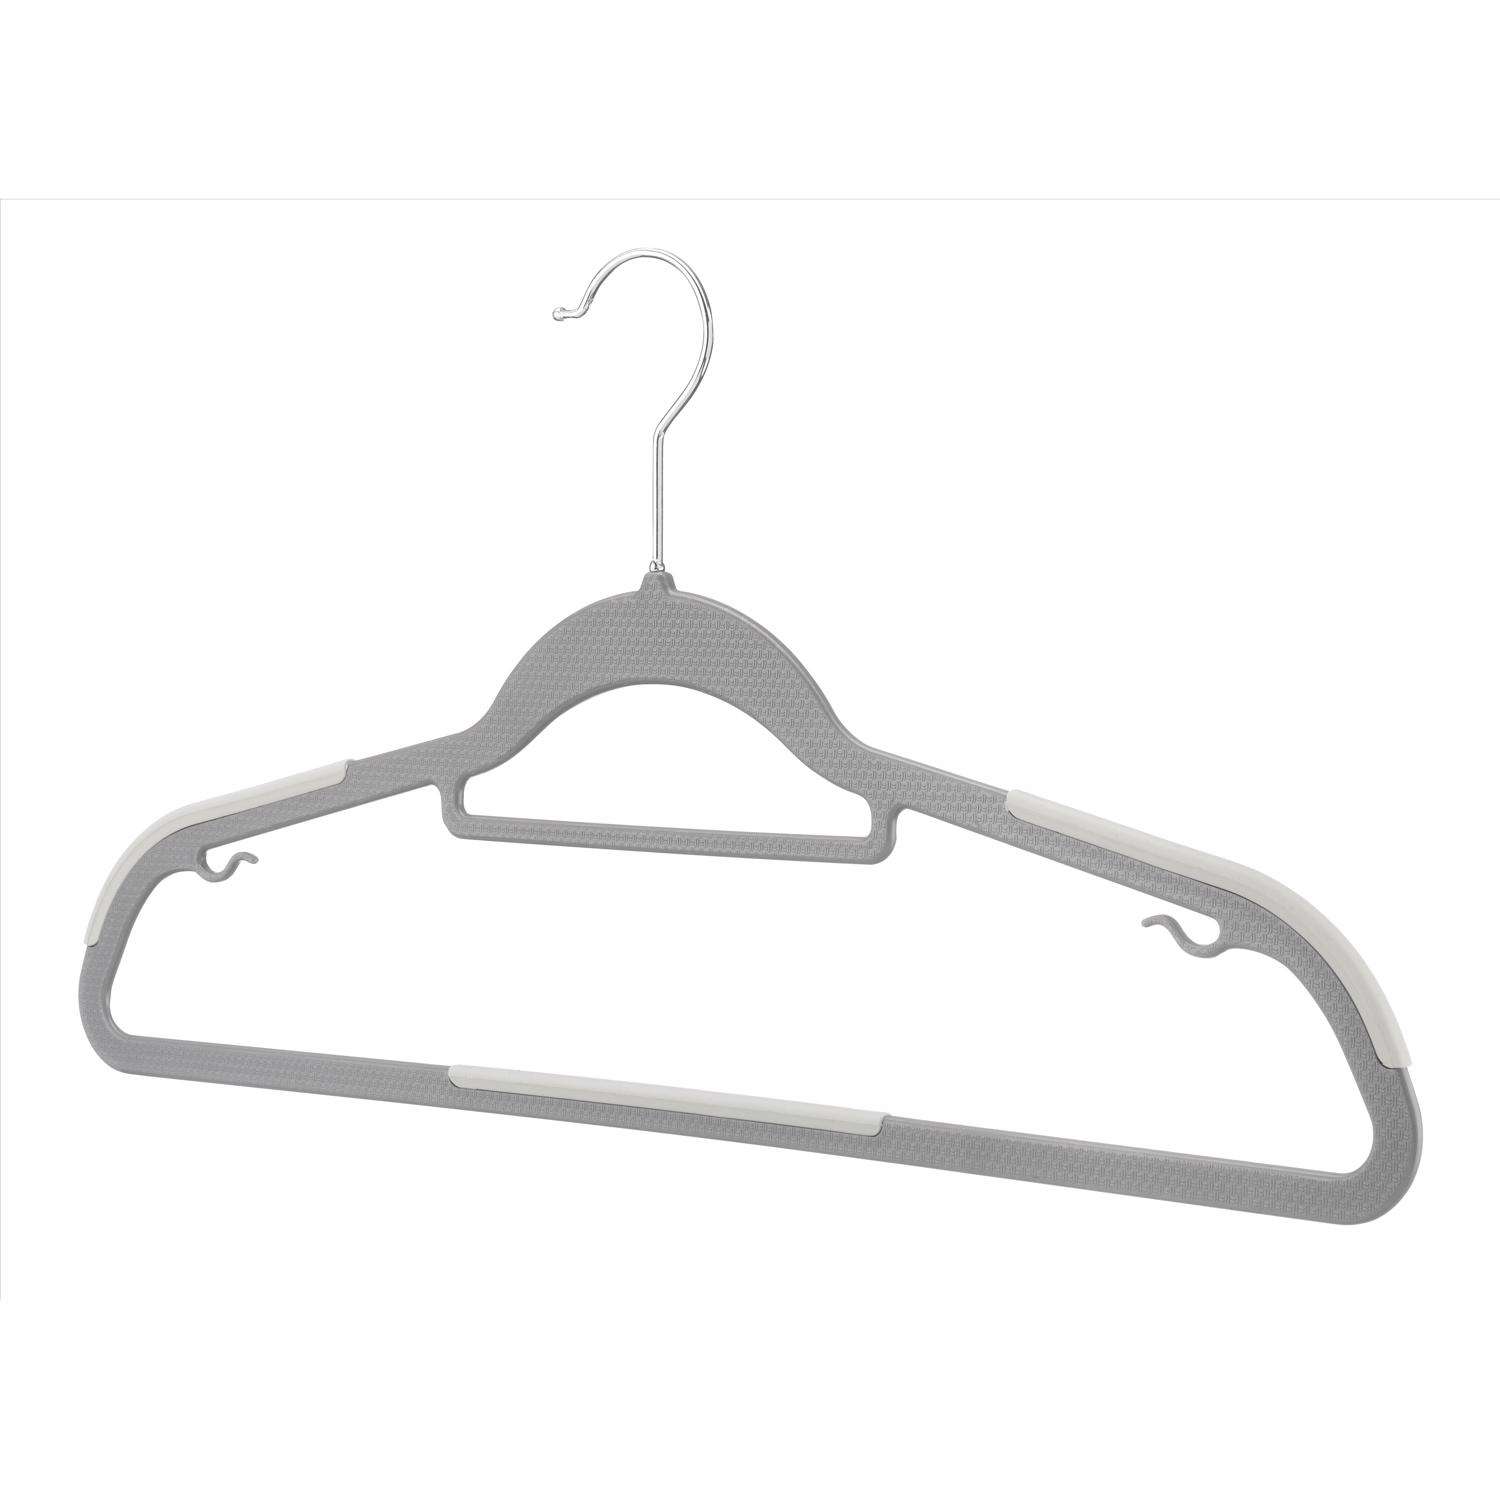 Whitmor Hanger Clips, 4-Pack